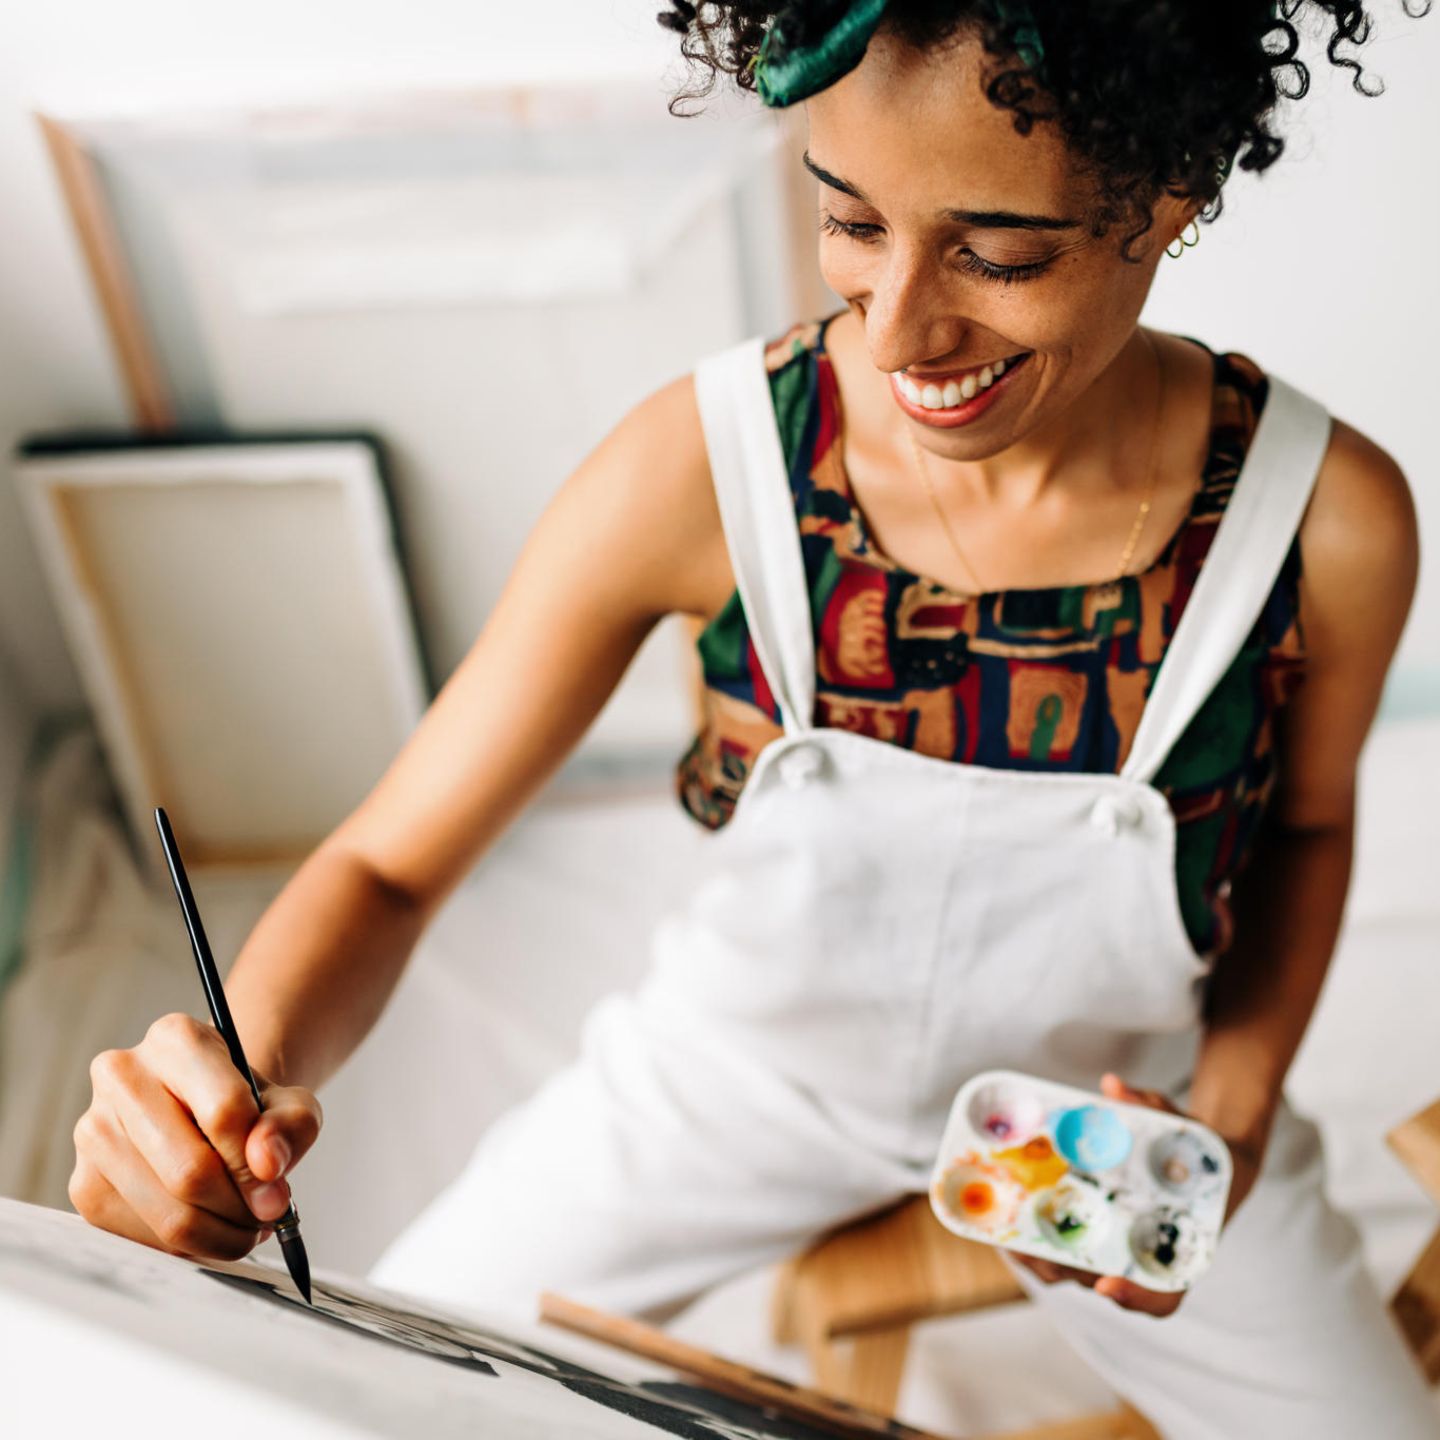 Eine Frau malt glücklich auf einer Leinwand